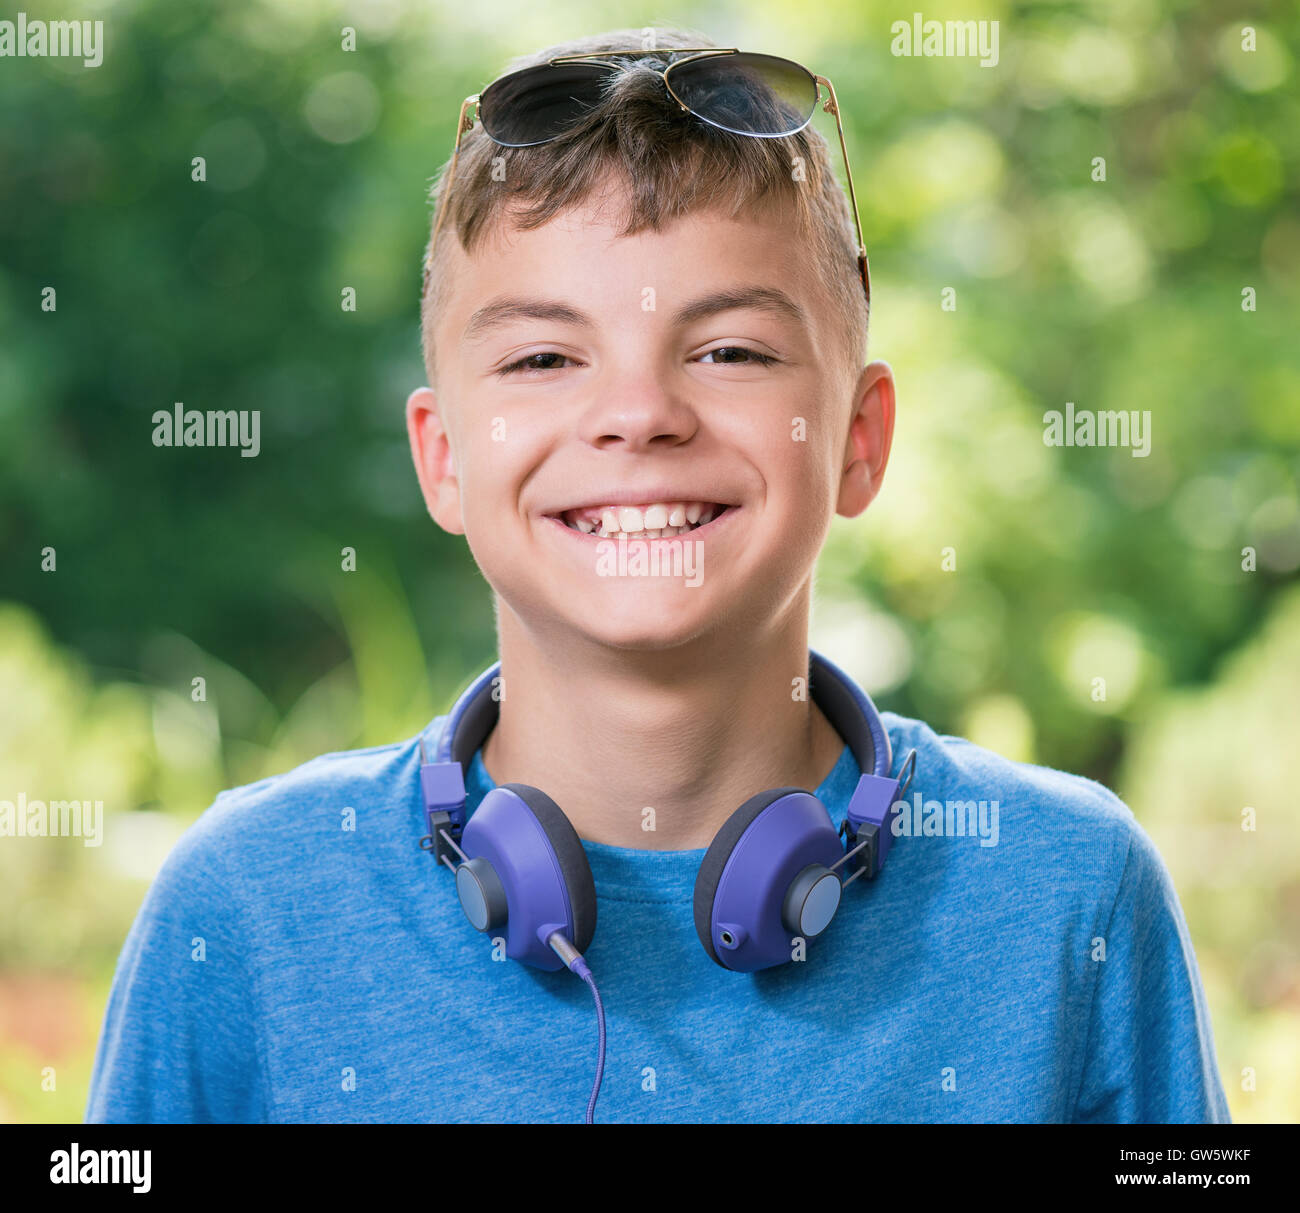 Jovencito con auriculares Foto de stock